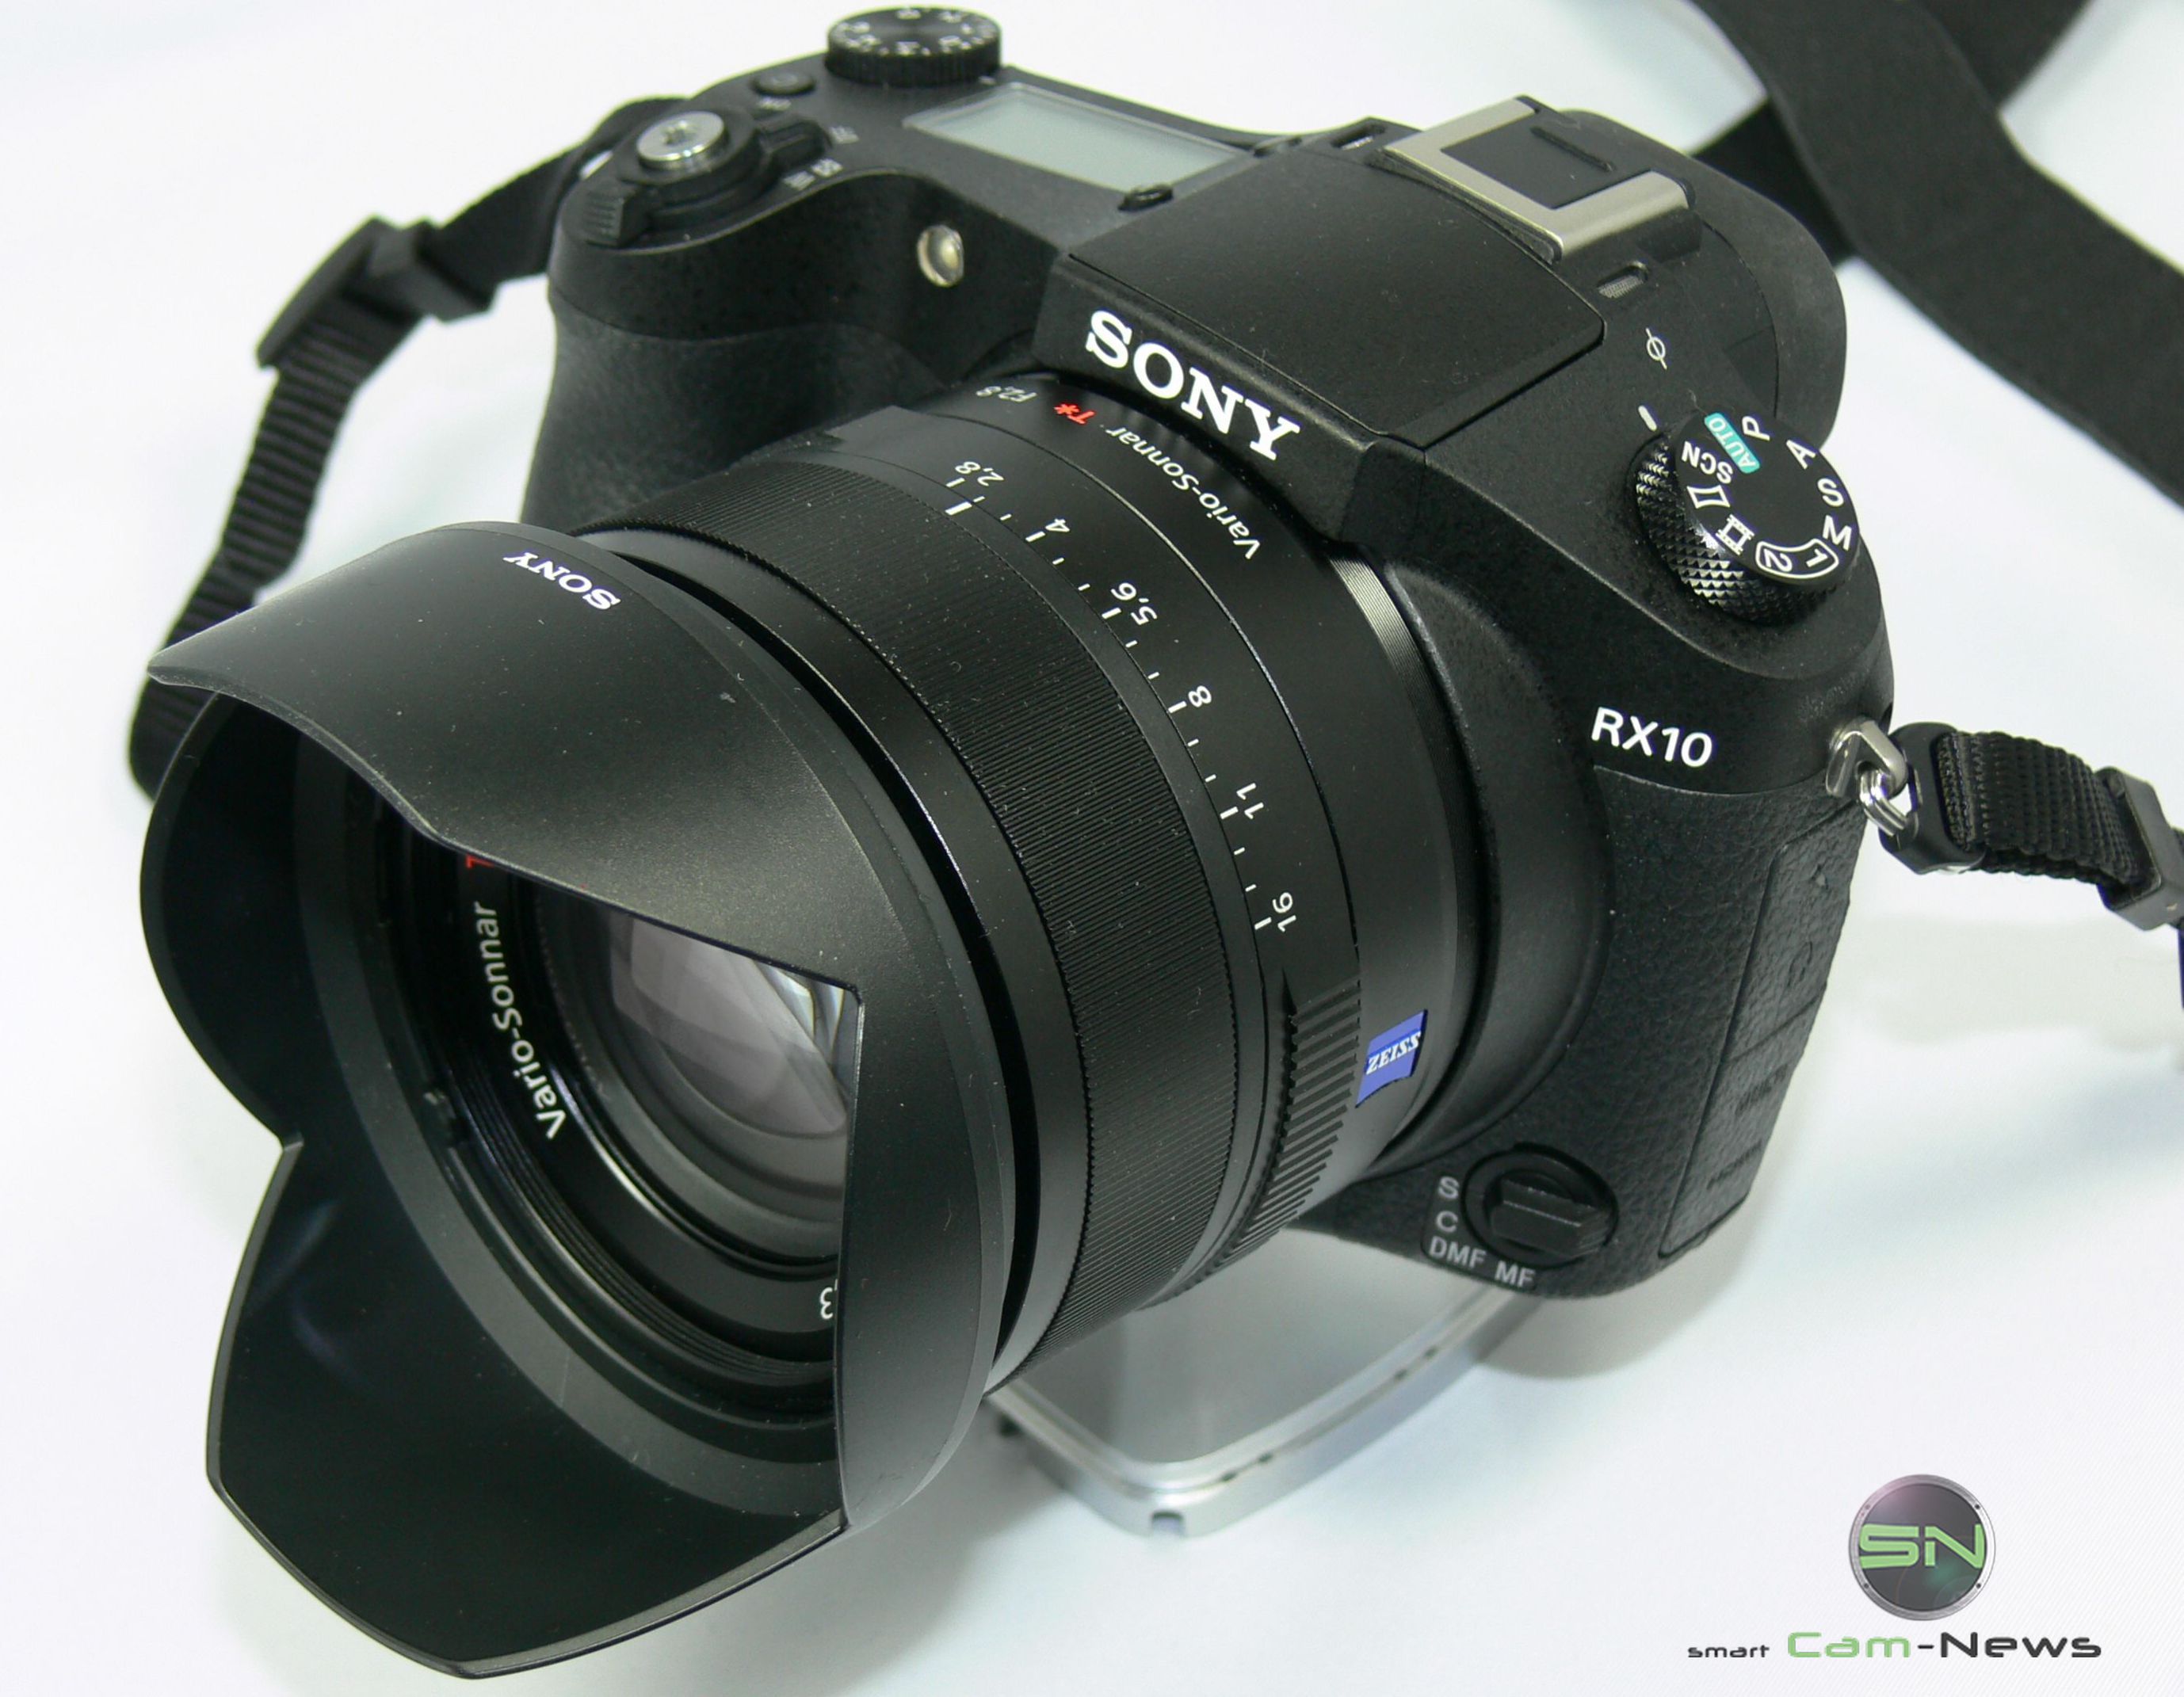 REISE nach LAS VEGAS: Sony RX10 –  eine High-End Bridge Kamera gibt Gas